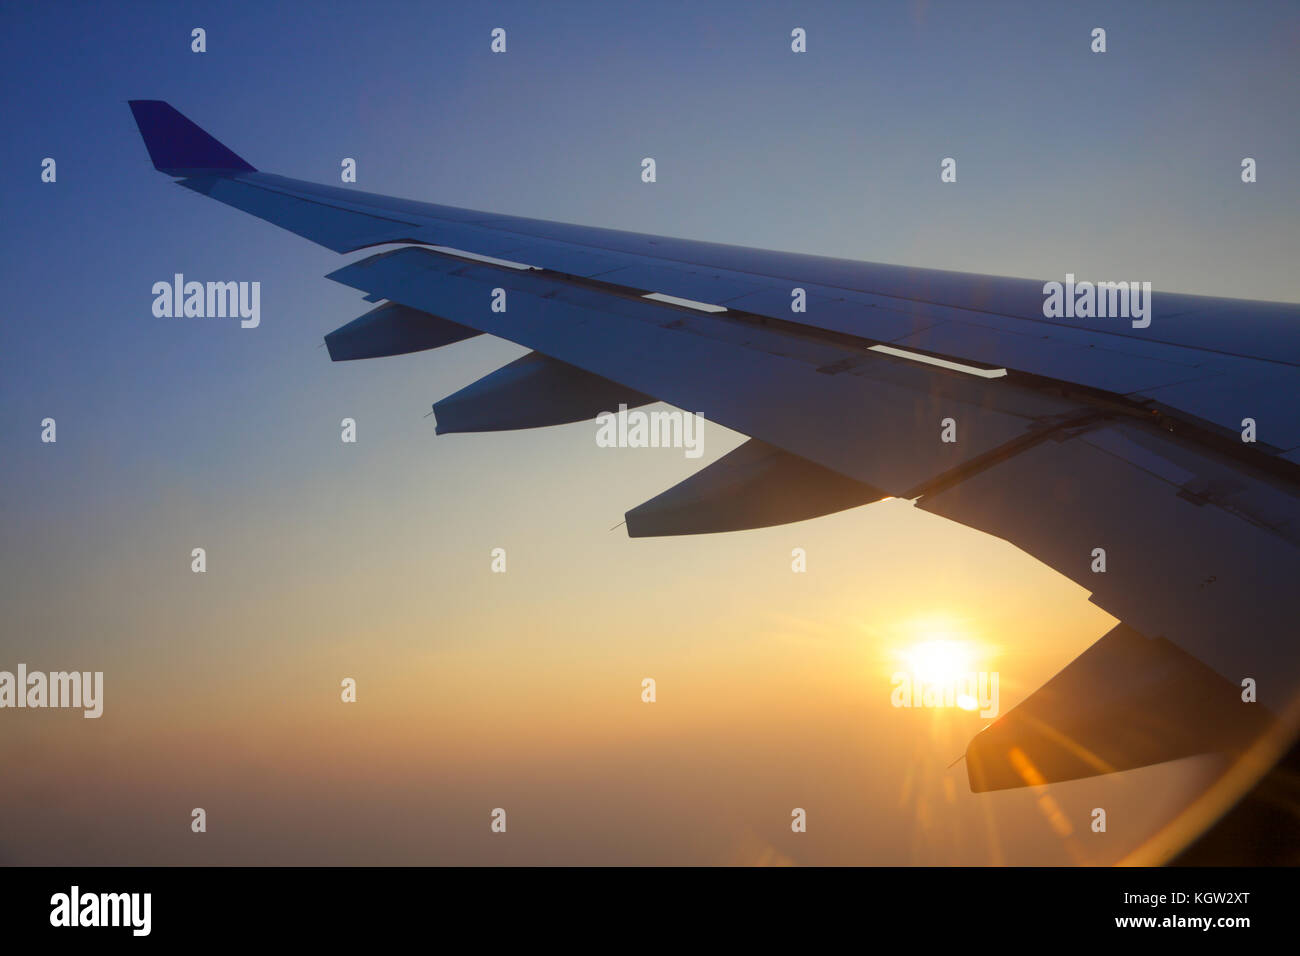 Gros plan d'une aile d'avion au coucher du soleil Banque D'Images